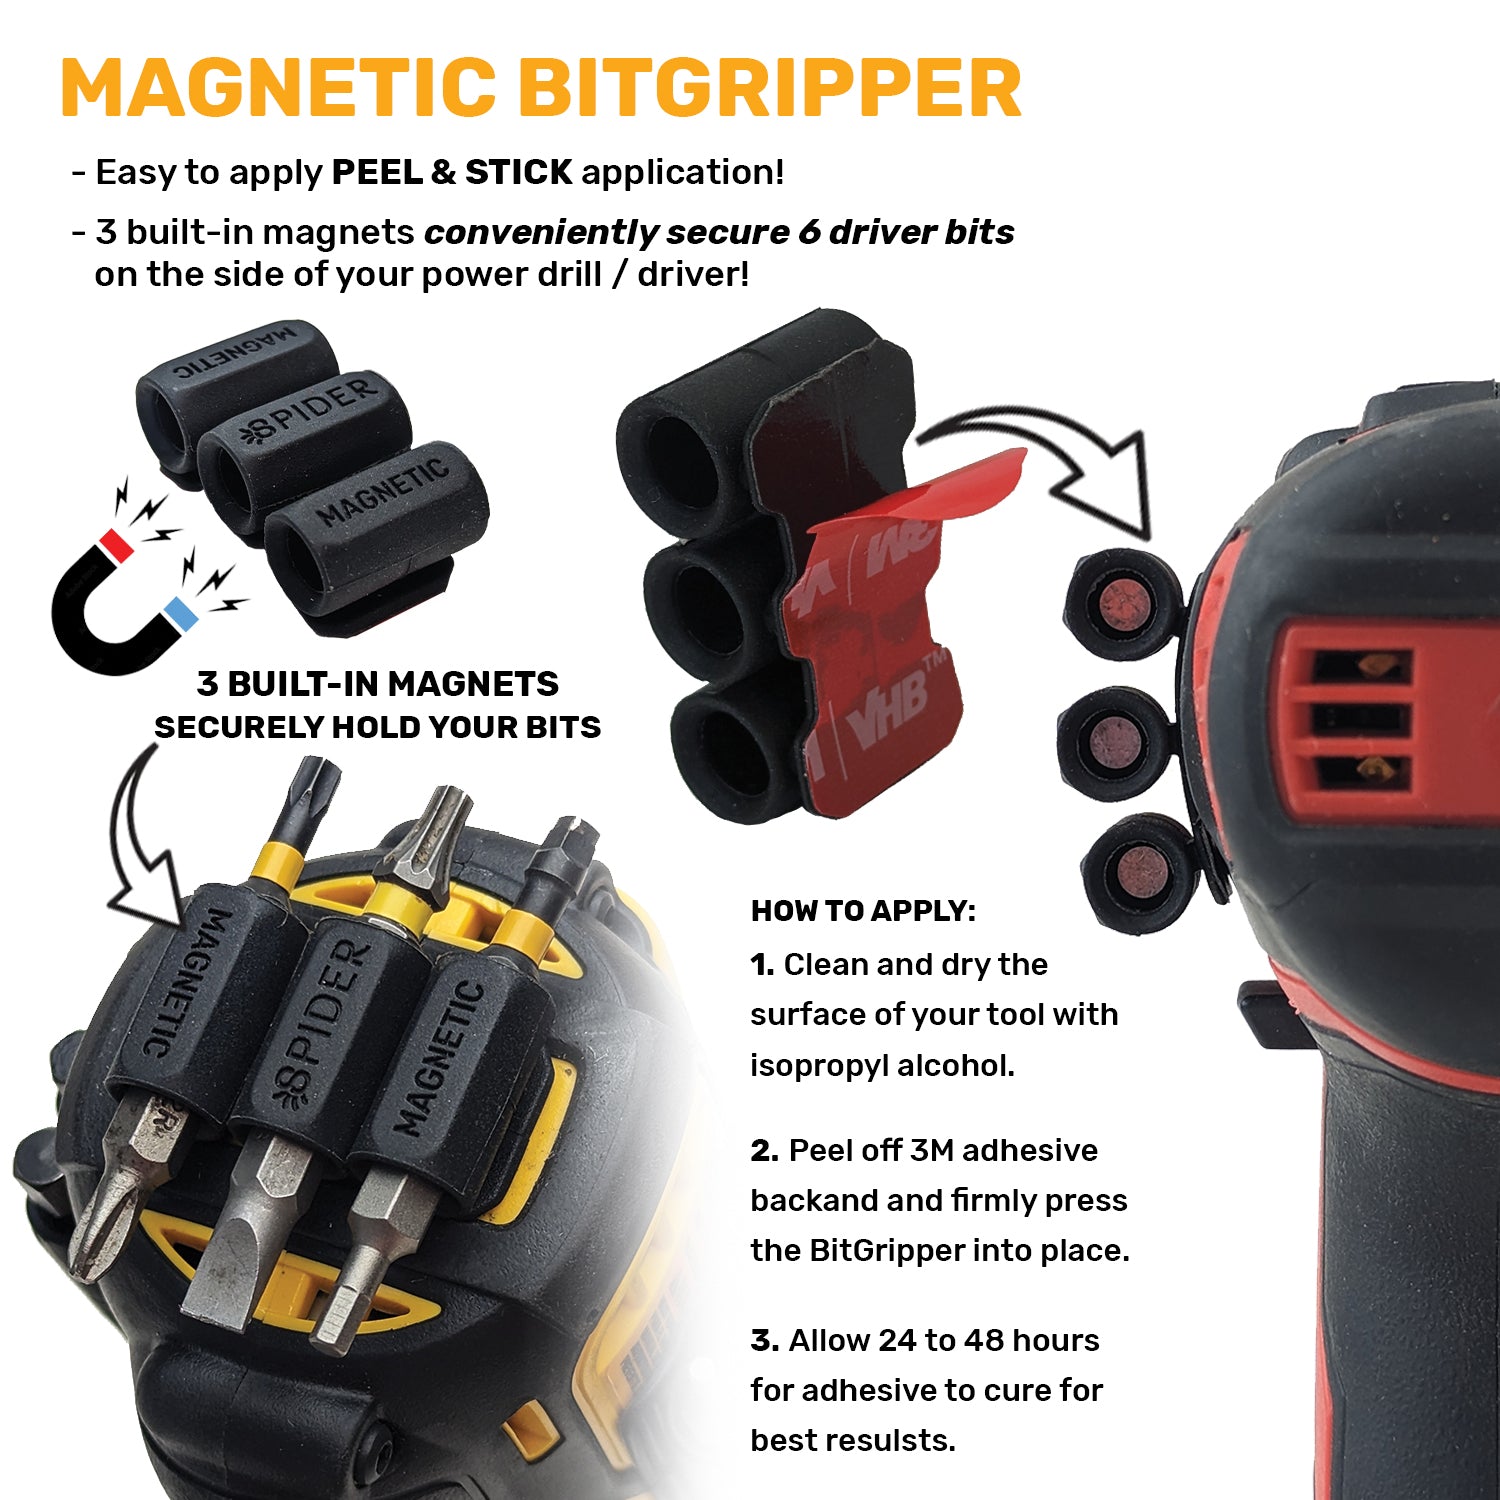 BUNDLE - 2 BitGripper v2 + 2 Magnetic BitGripper